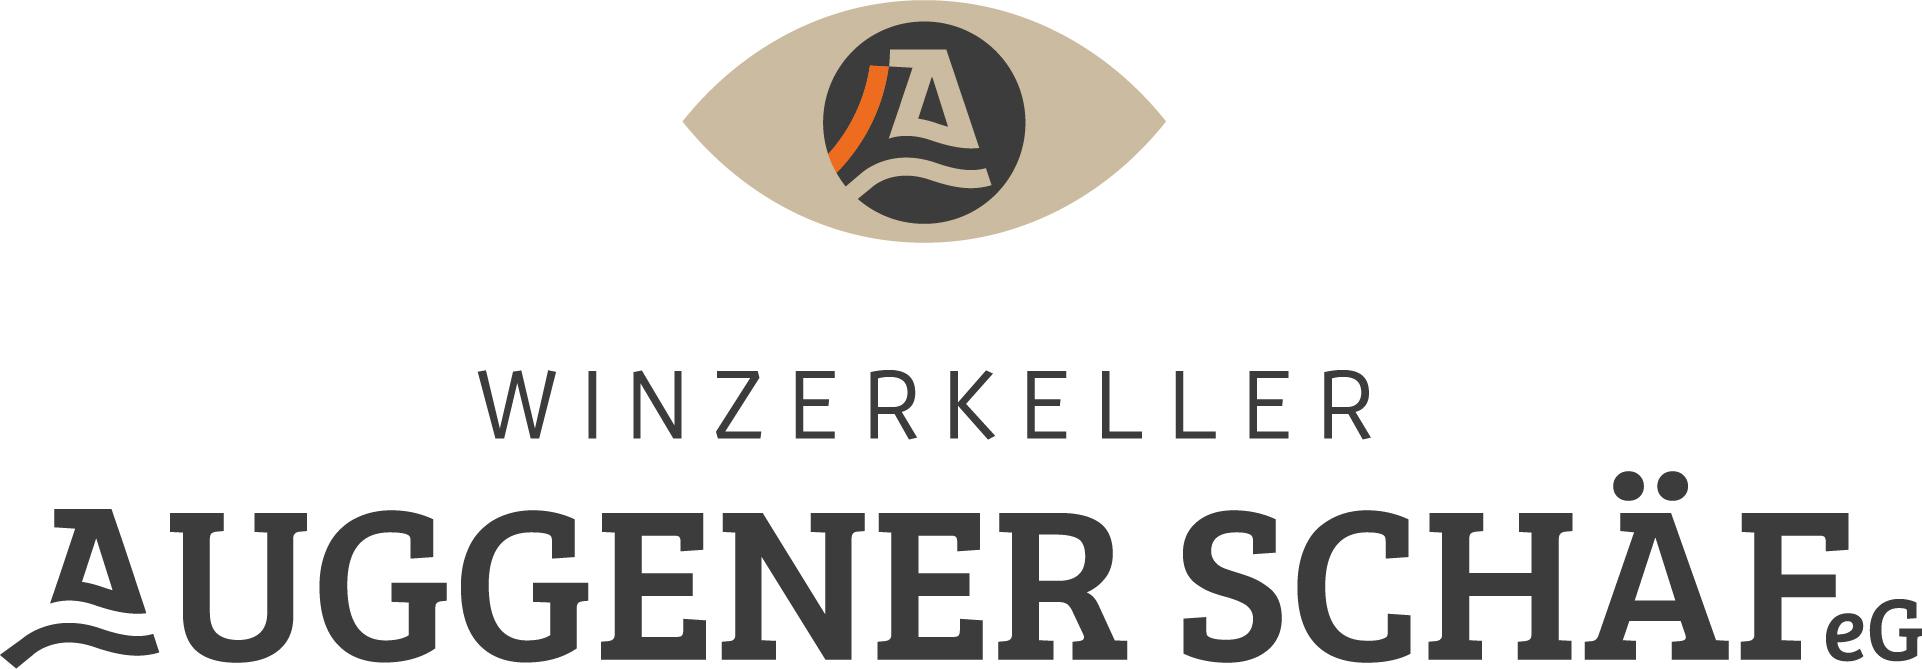 Winzerkeller Auggener Schäf eG Logo